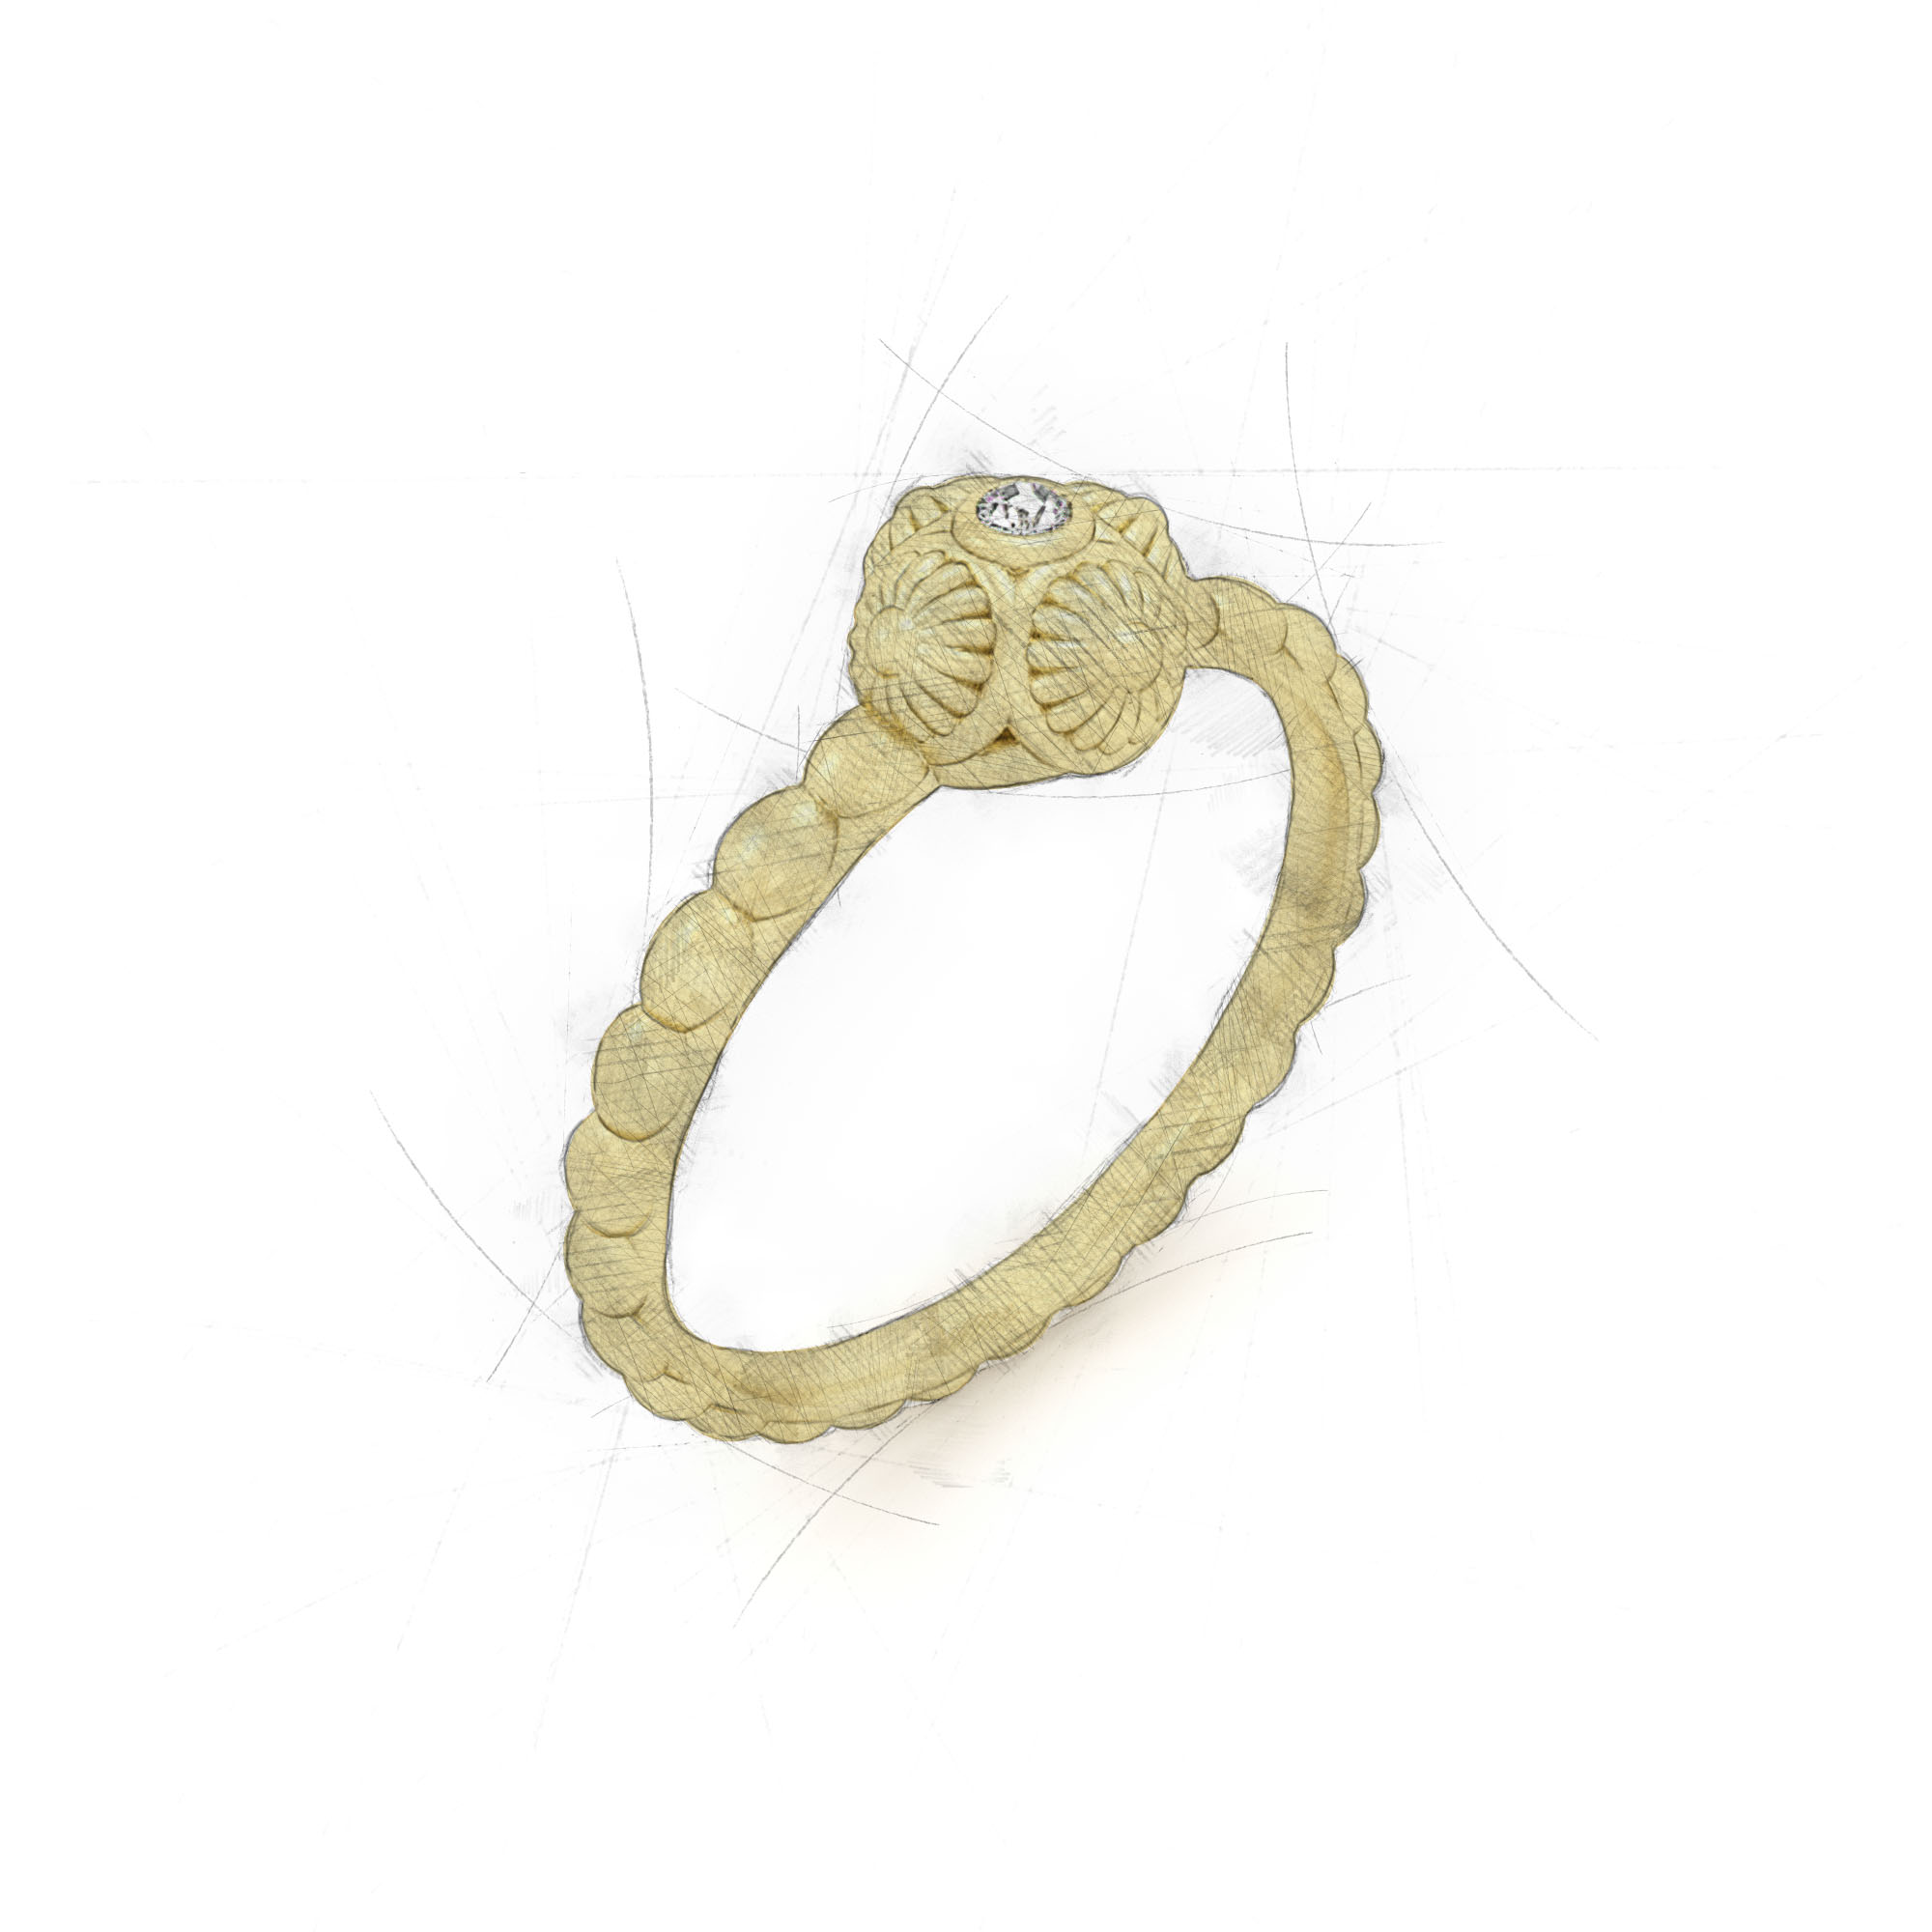 Einzigartiger Ring von Filiotti mit Brillant in der Fassung